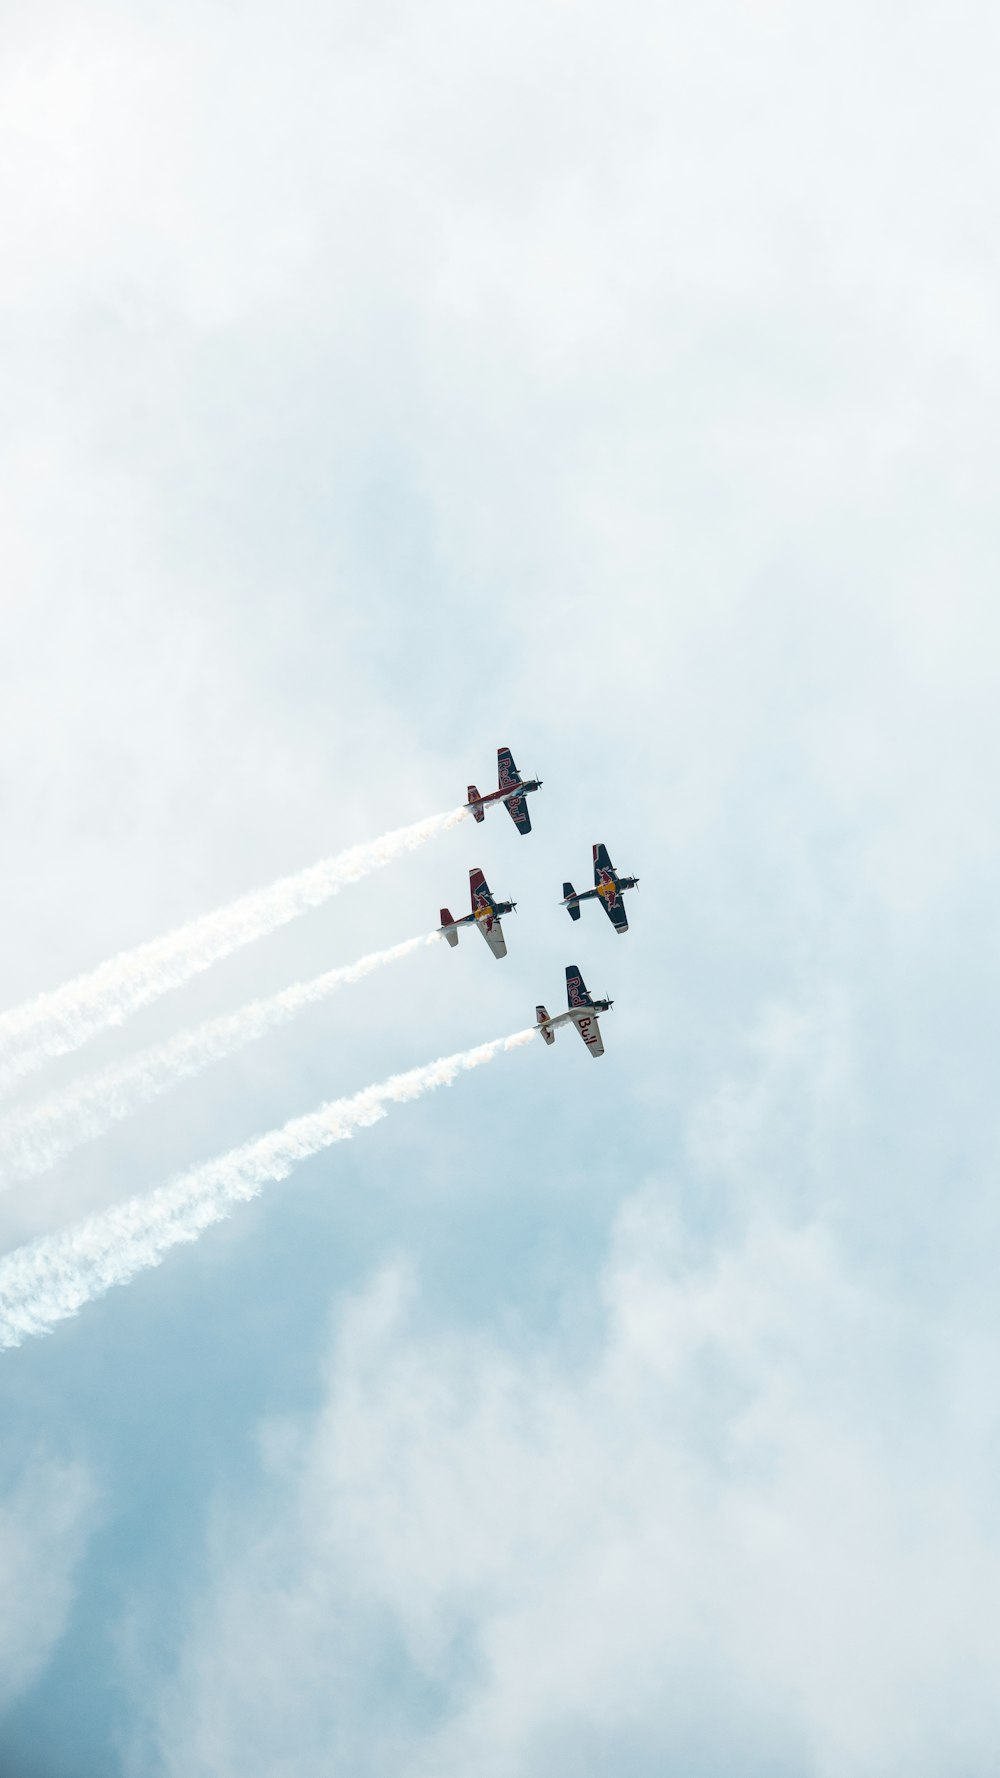 Fünf Düsenflugzeuge unter bewölktem Himmel